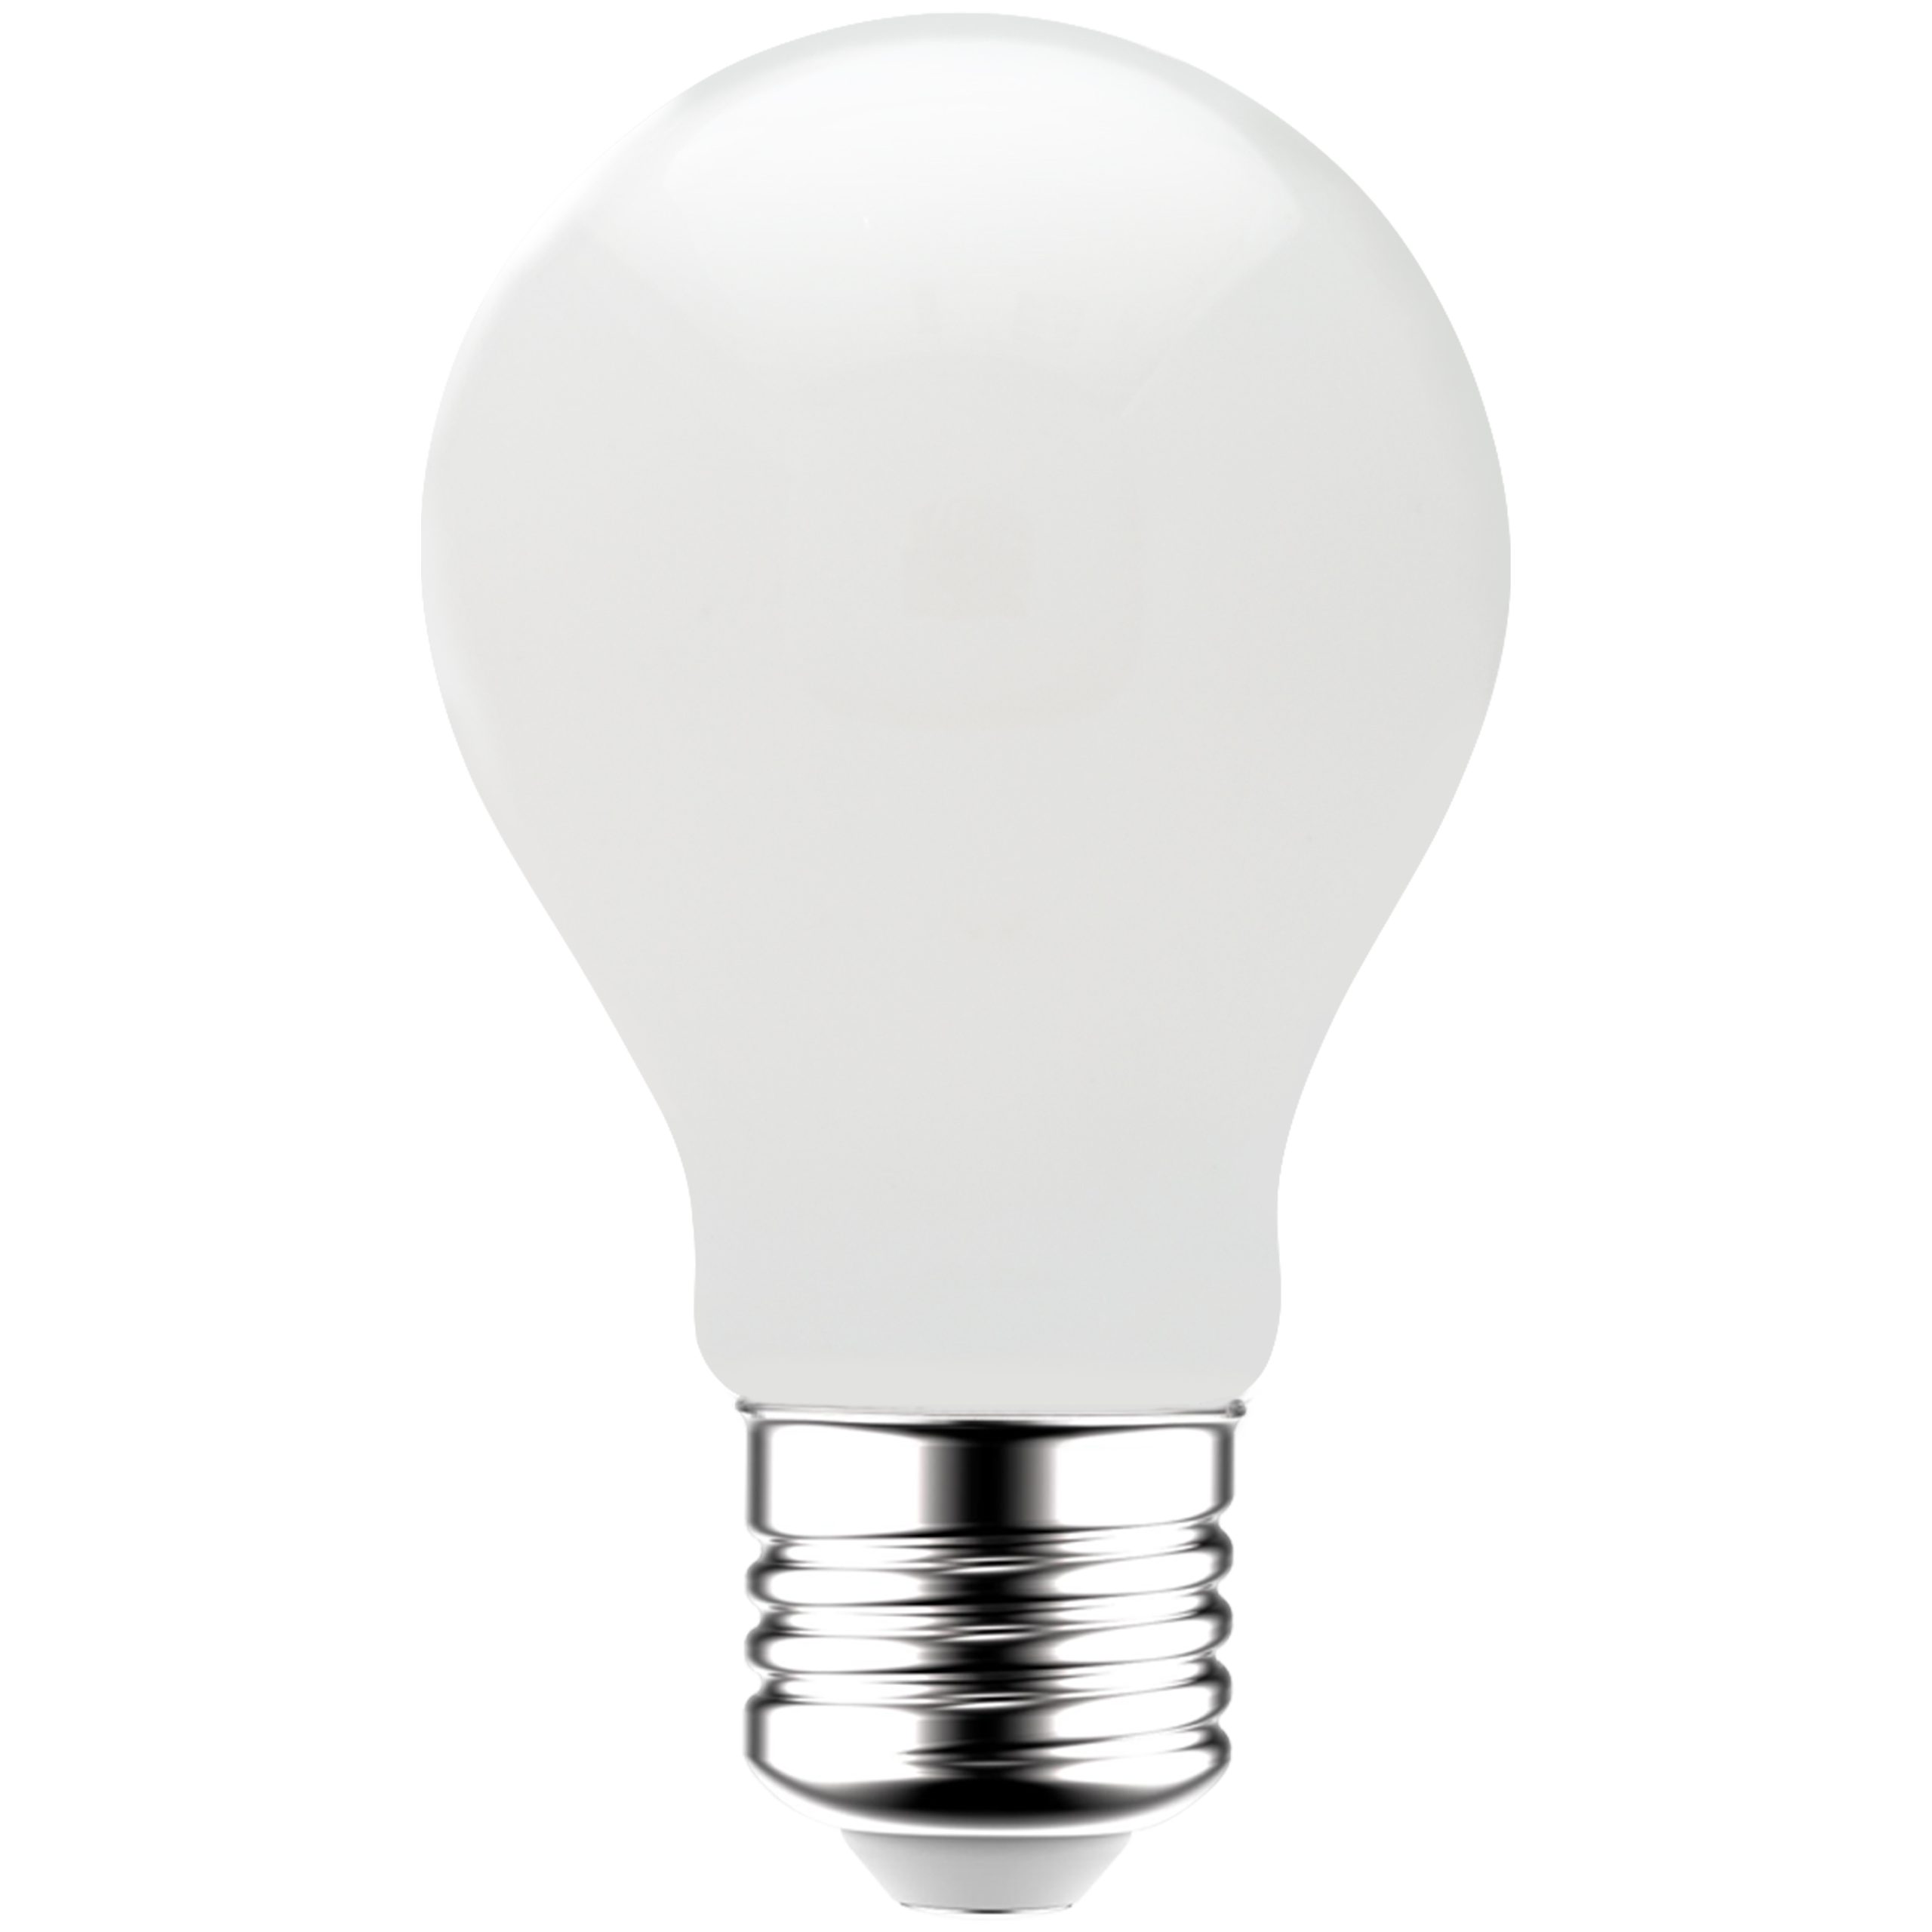 LED's light LED-Leuchtmittel 0620141 LED Glühbirne, E27, E27 4.5W warmweiß Opal A60